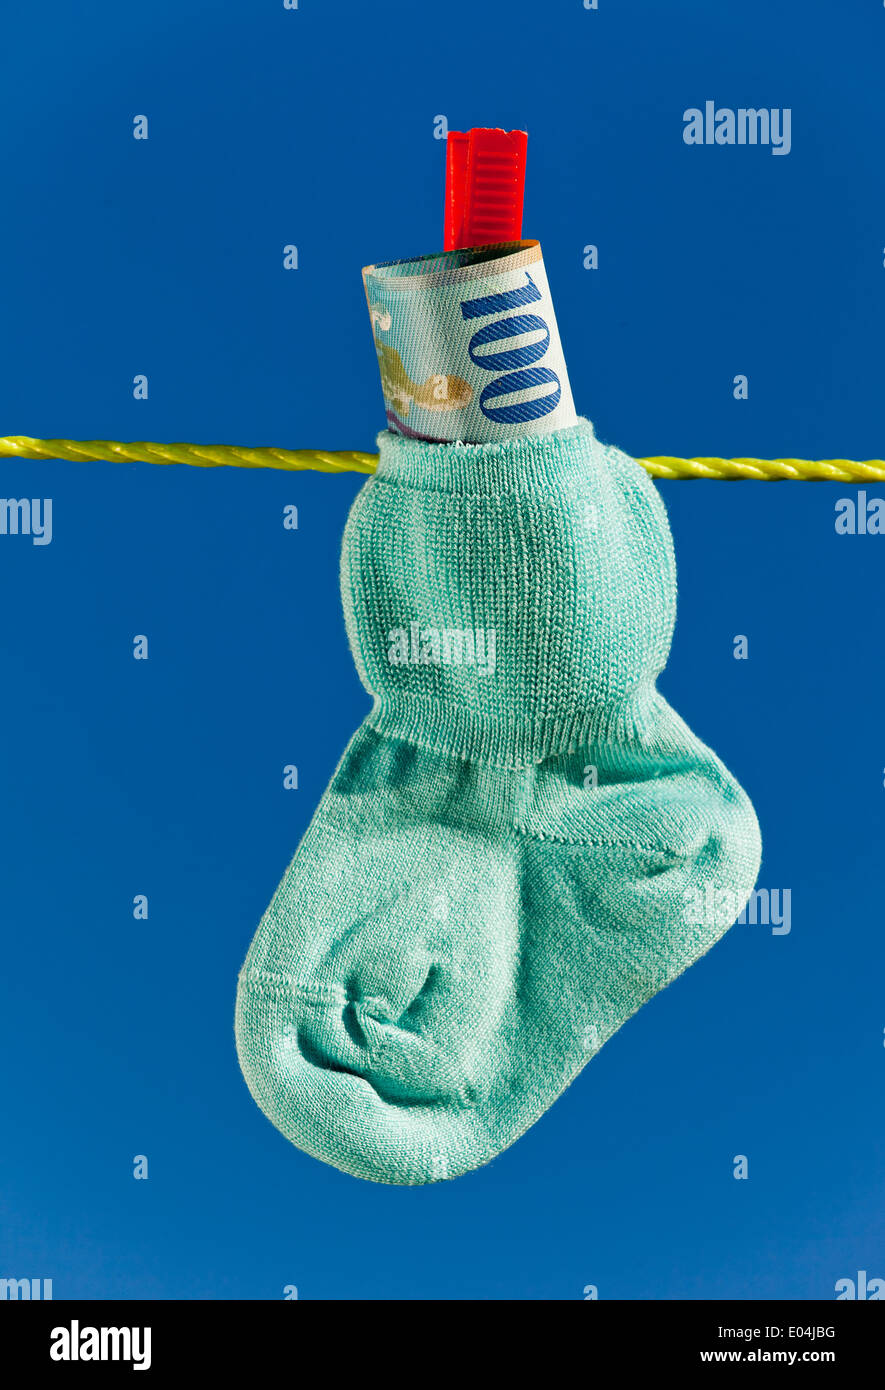 Baby calze su stendibiancheria con il franco svizzero. Blue sky., Baby Socken auf Waescheleine mit Schweizer Franken. Il Blauer Himmel. Foto Stock